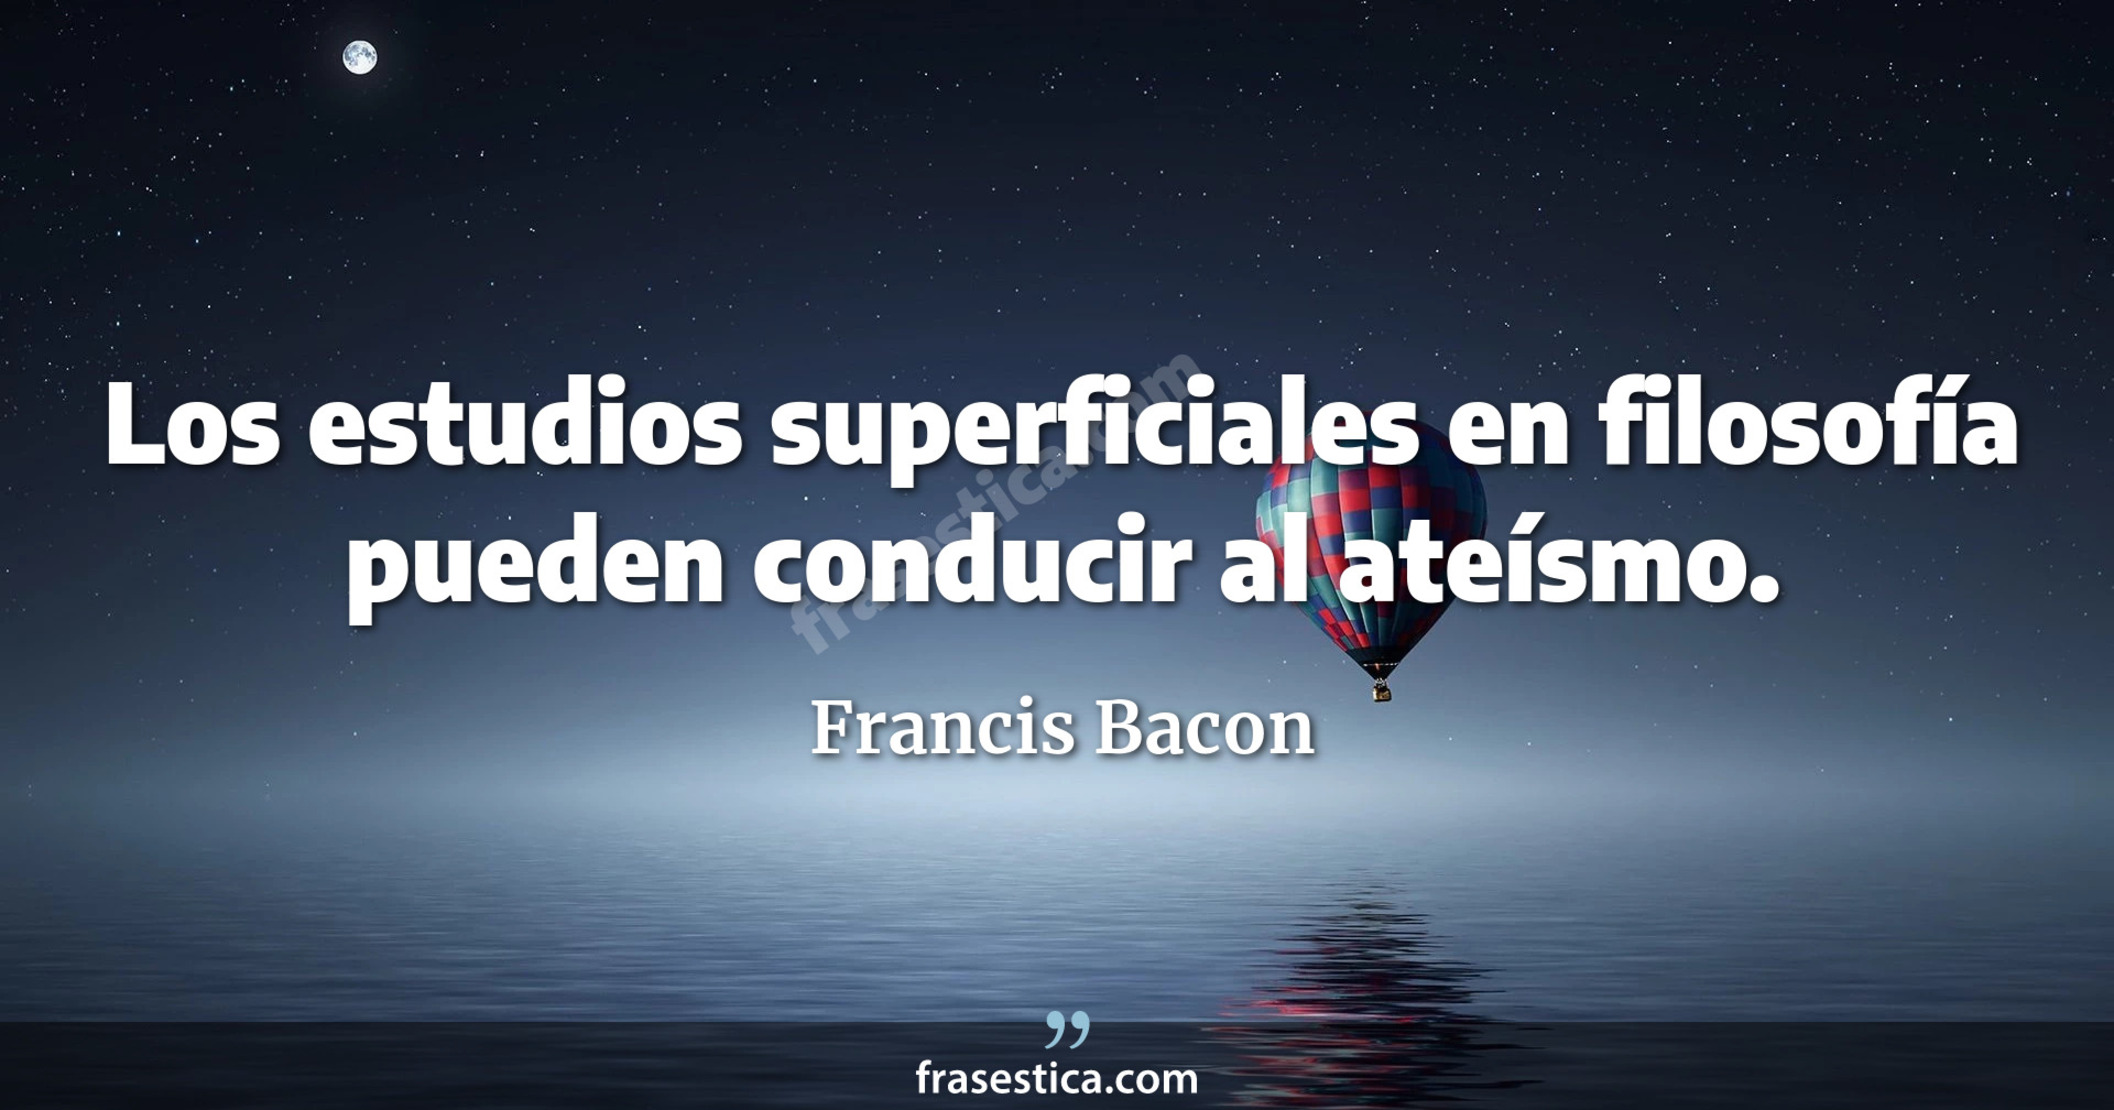 Los estudios superficiales en filosofía pueden conducir al ateísmo. - Francis Bacon